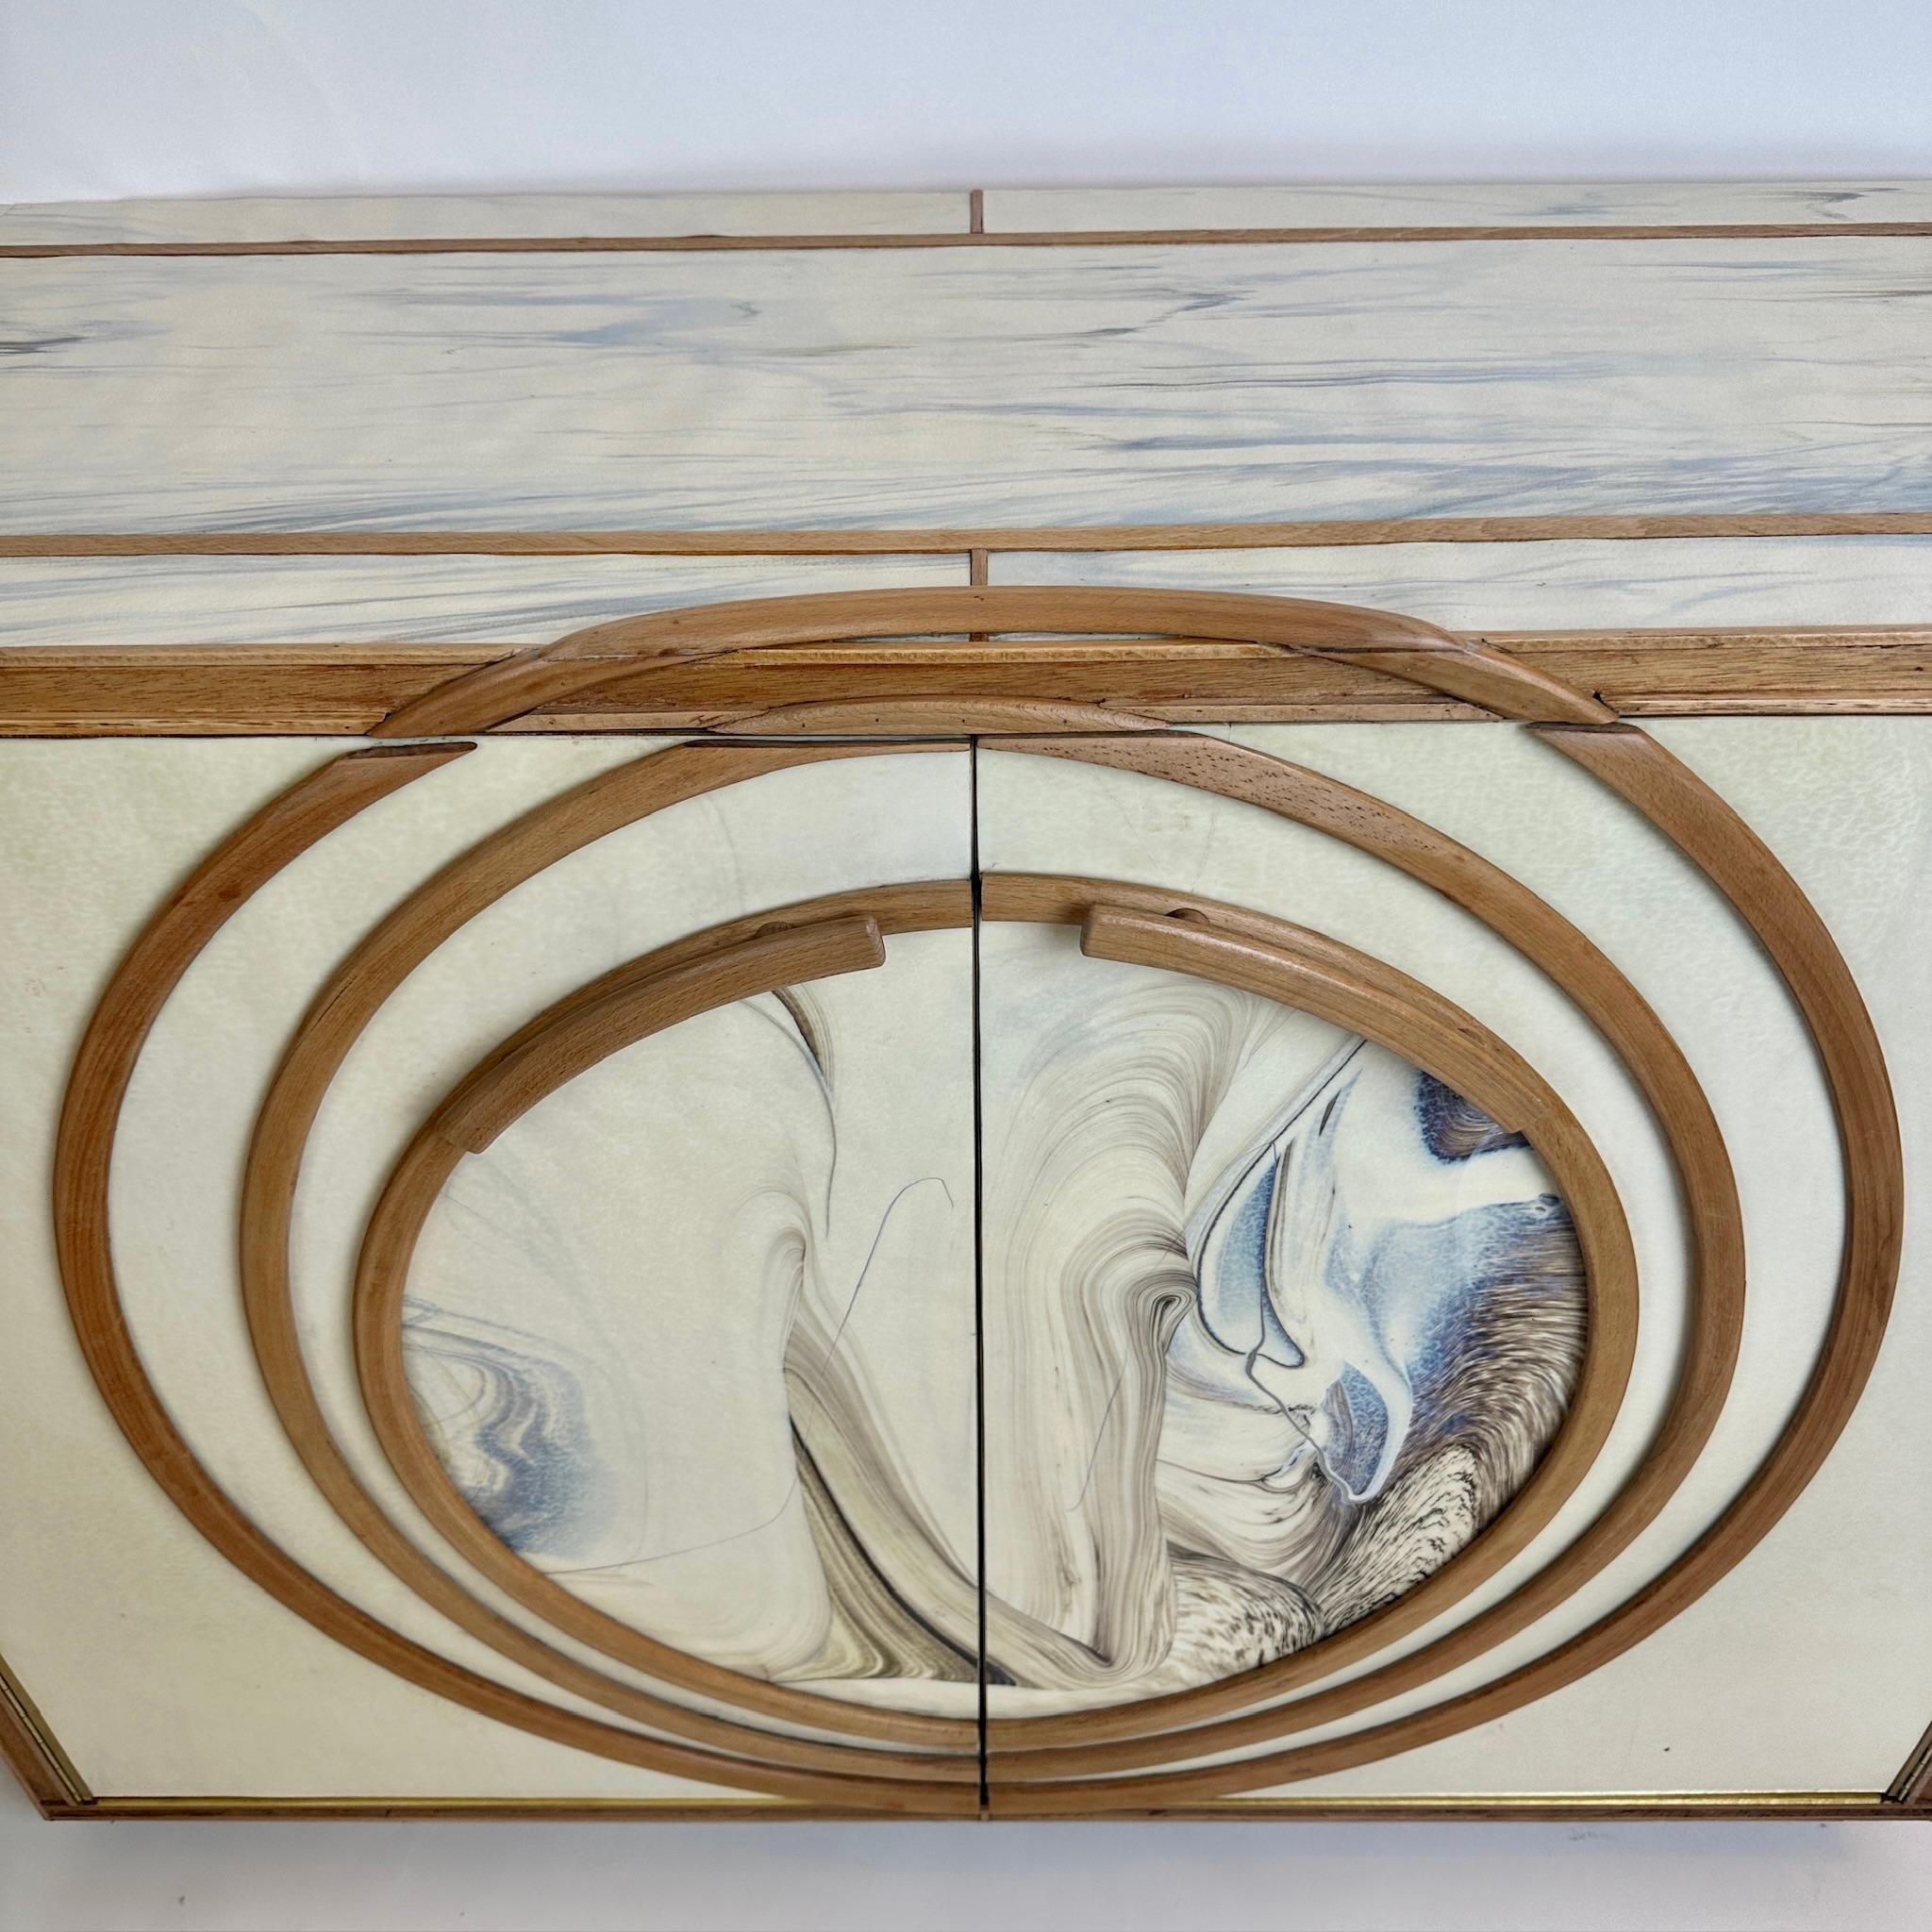 Wunderschönes Paar Schränke aus weißem strukturiertem Murano-Kunstglas (mit einem Hauch von Blau und Braun) und Buchenholz mit Messingdetails. Ein zentrales und herausnehmbares Holzregal im Inneren. Griffe aus massivem Buchenholz zum Öffnen der